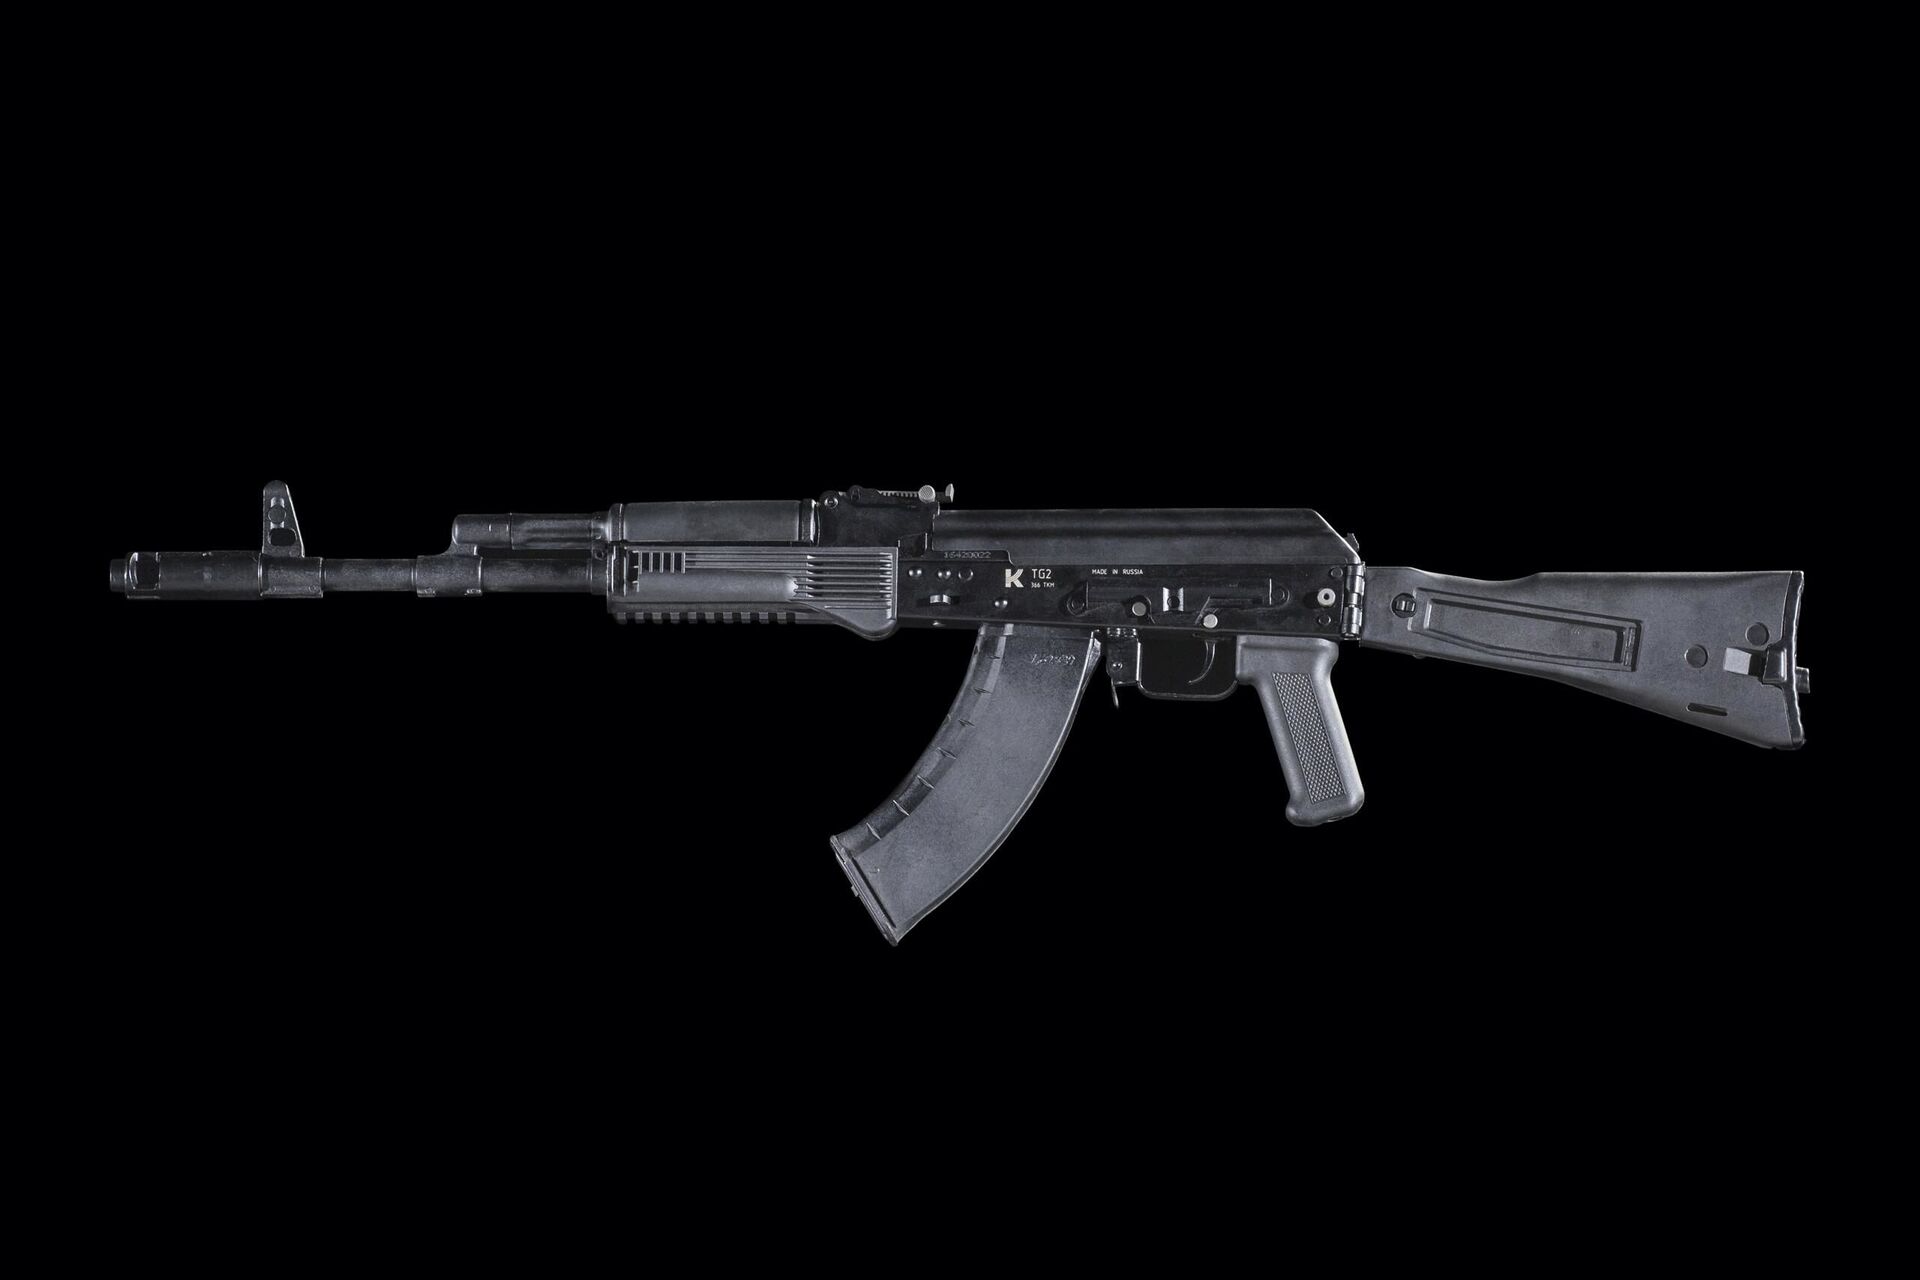 Kalashnikov bắt đầu bán một loại súng nòng trơn mới - Sputnik Việt Nam, 1920, 08.02.2021